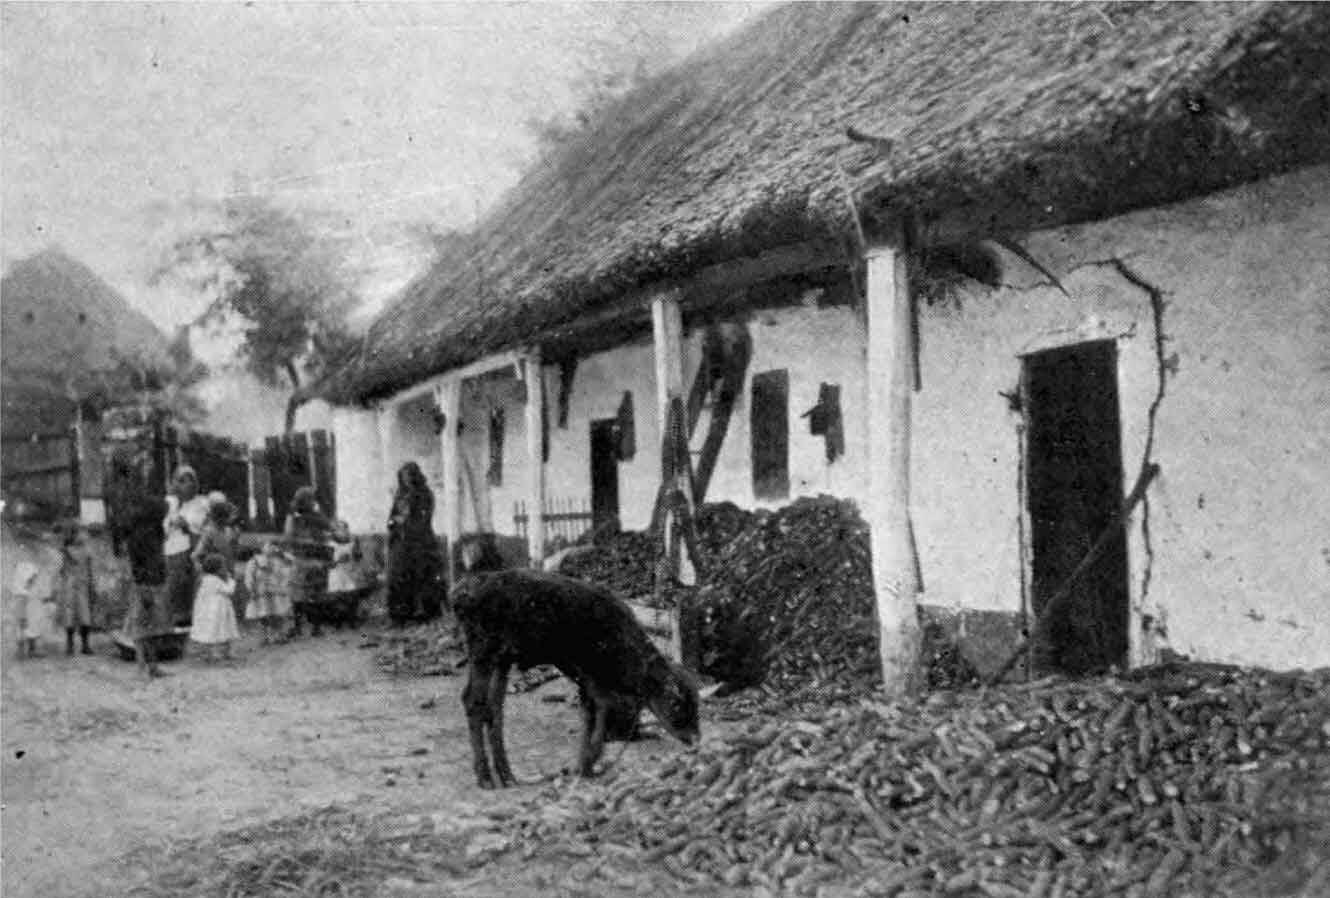 Desolate farm in Central Europe in 1918